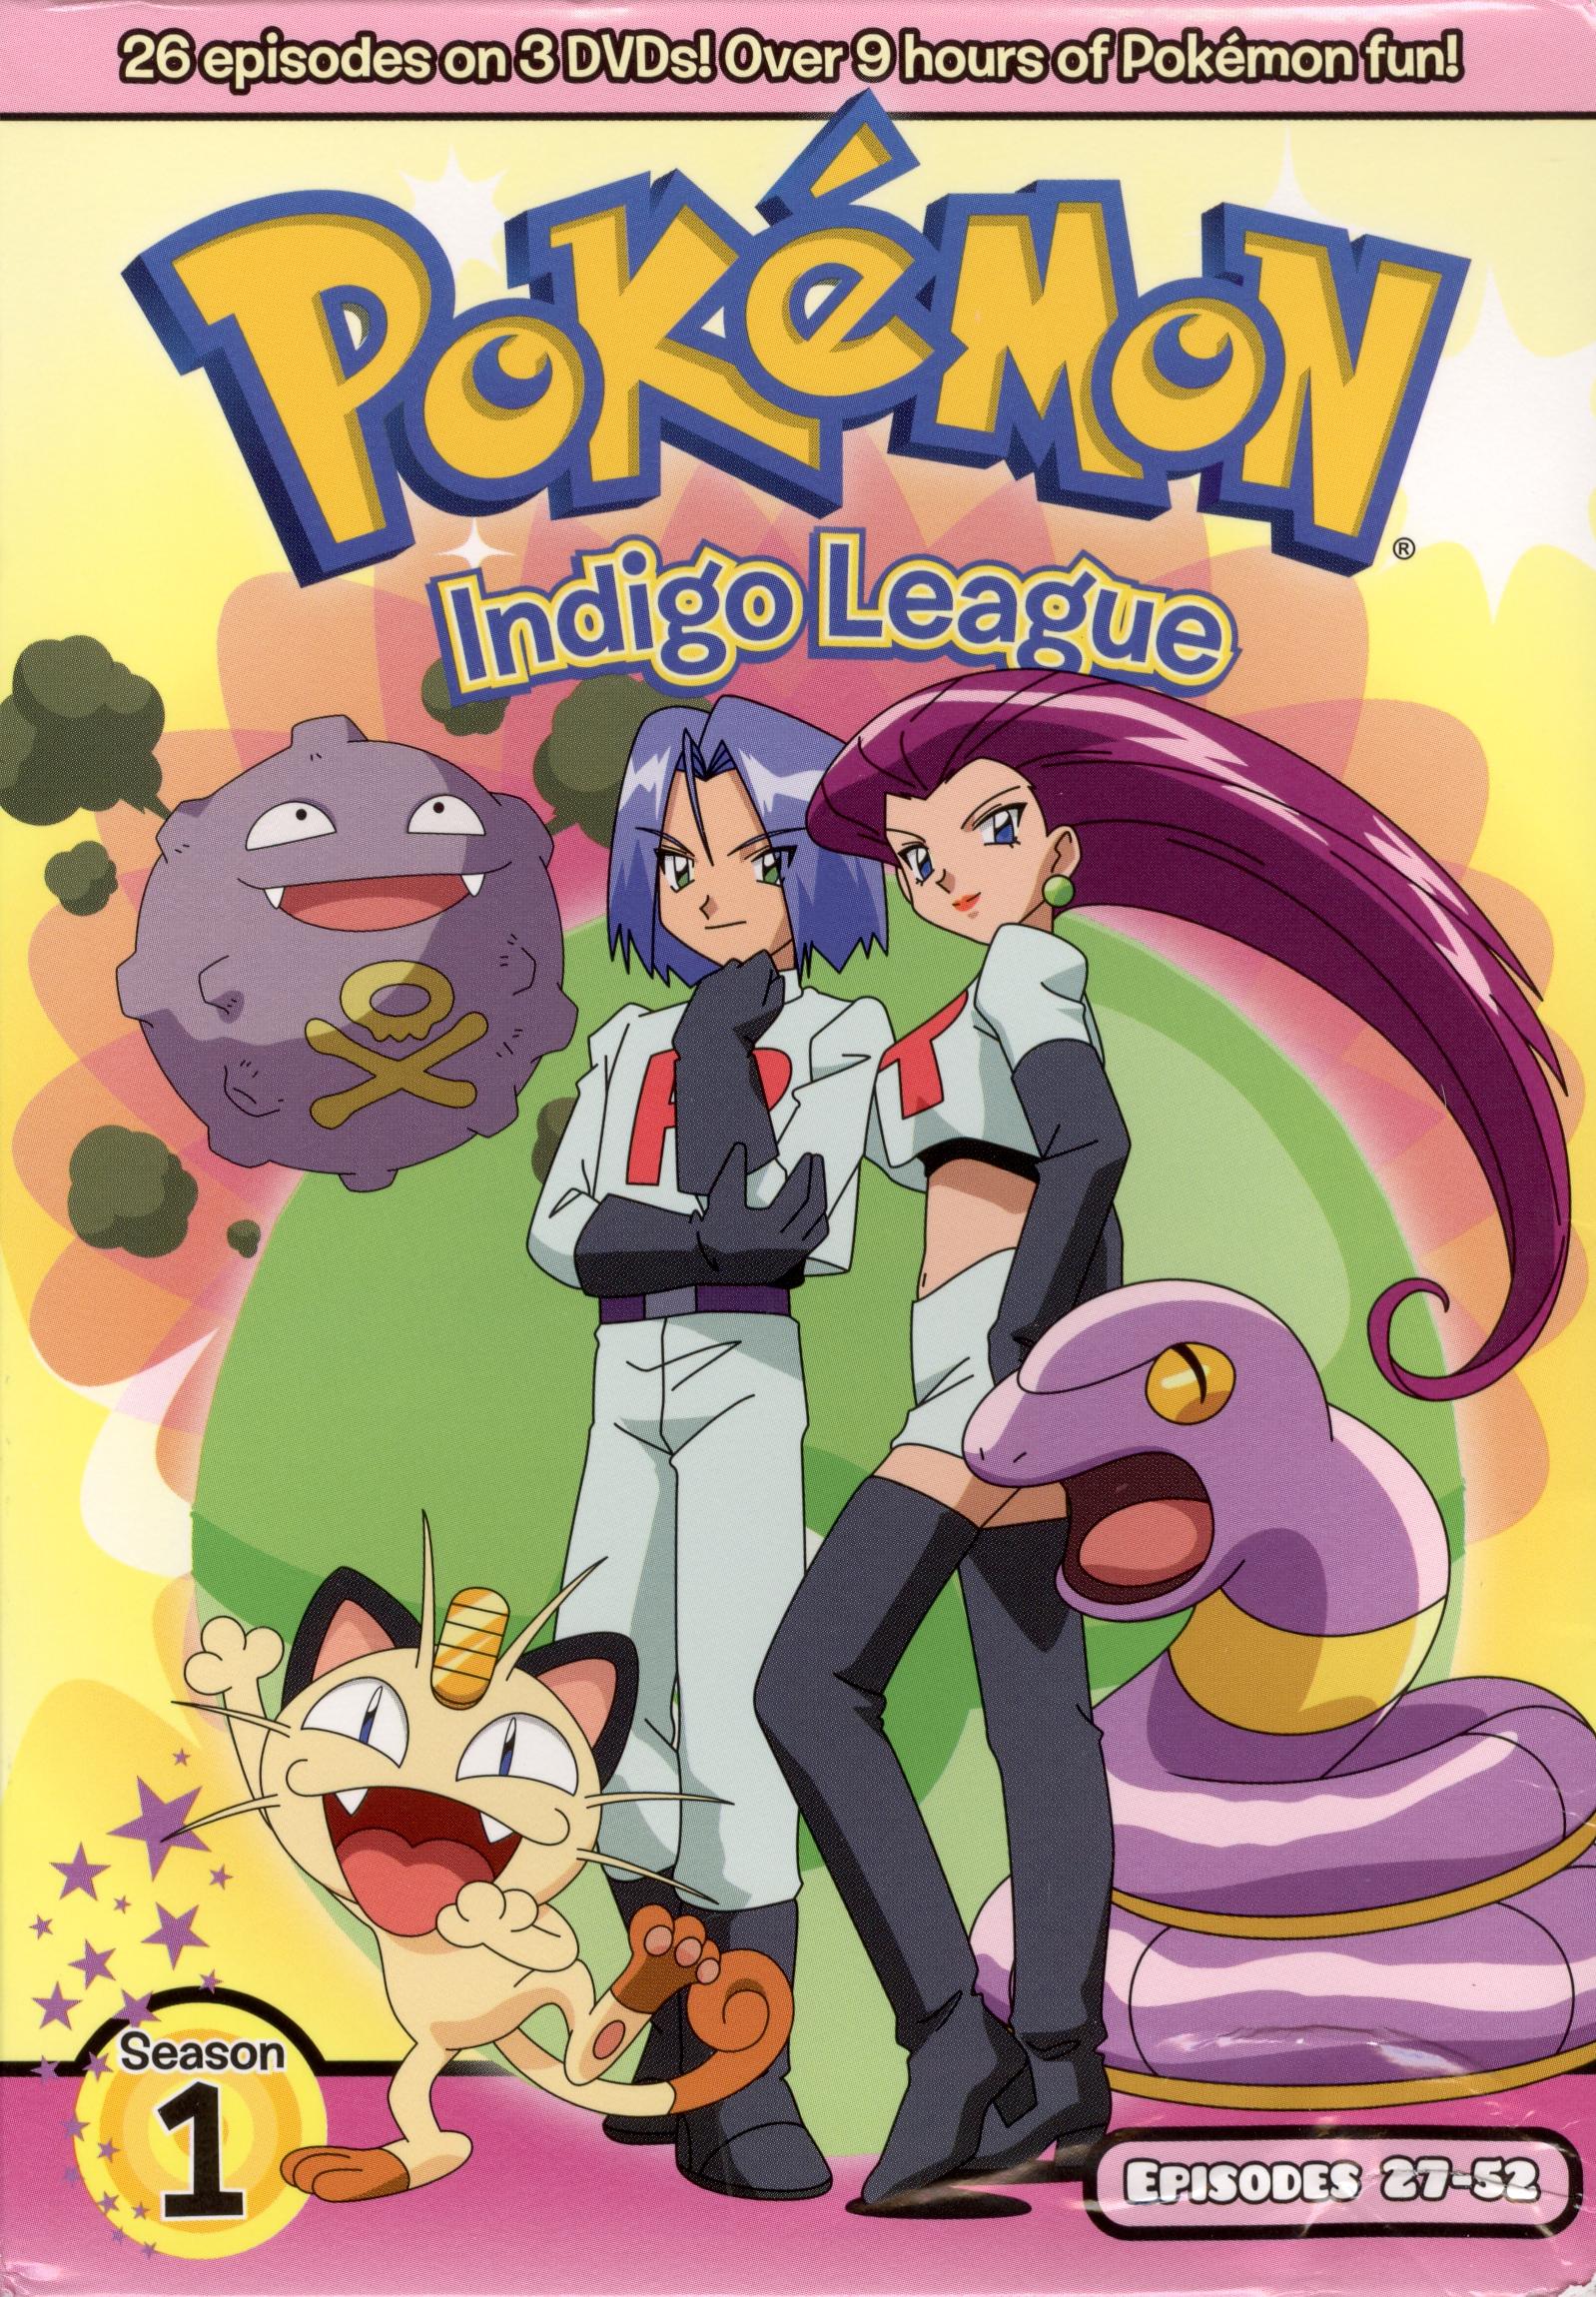 Pokémon' Anime Series, Season 1: Indigo League Top Episodes